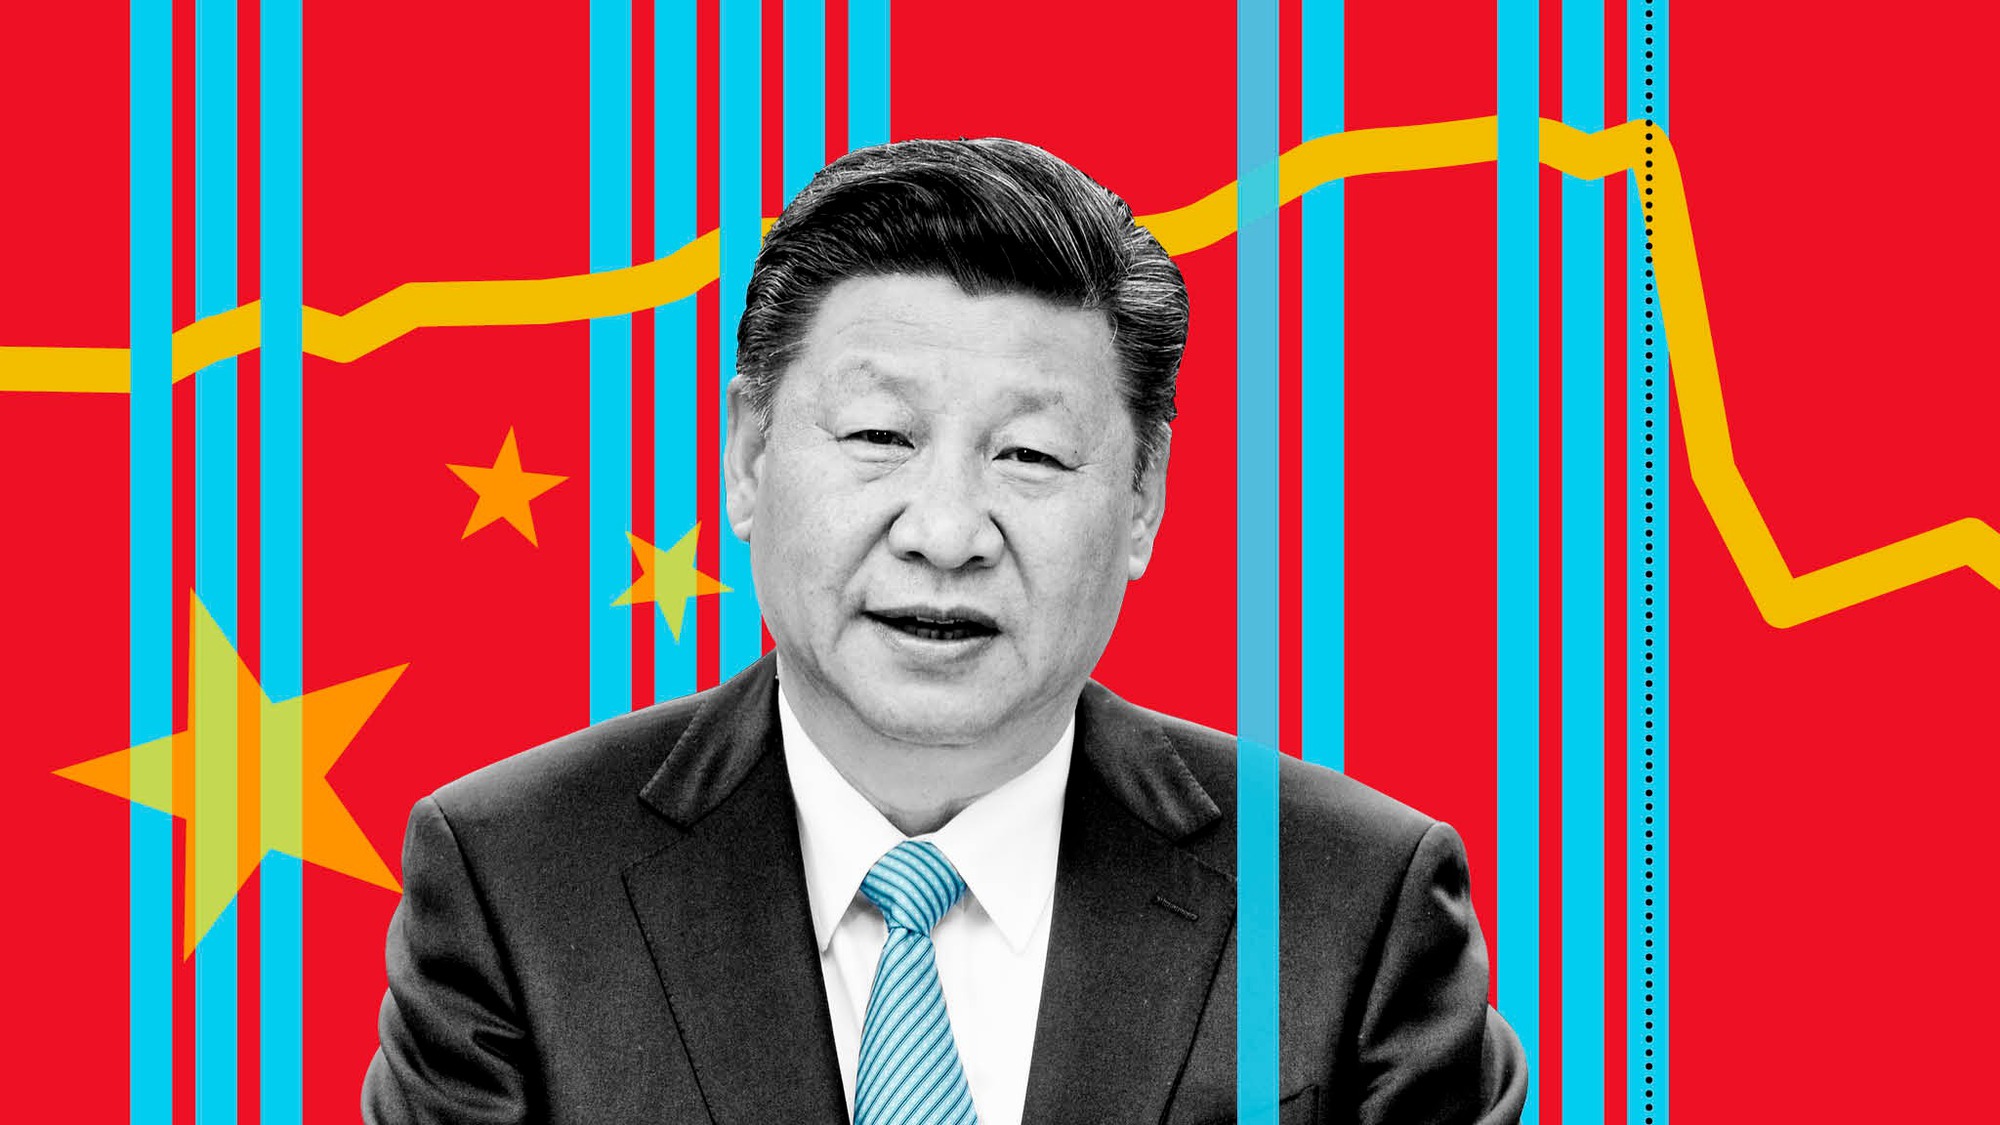 Một dấu ấn chính trong 5 năm qua của ông Tập Cận Bình là cách ông đã biến Trung Quốc thành một trong những quốc gia có chế độ quản lý nghiêm ngặt nhất trên toàn cầu về công nghệ. Ảnh: @AFP.